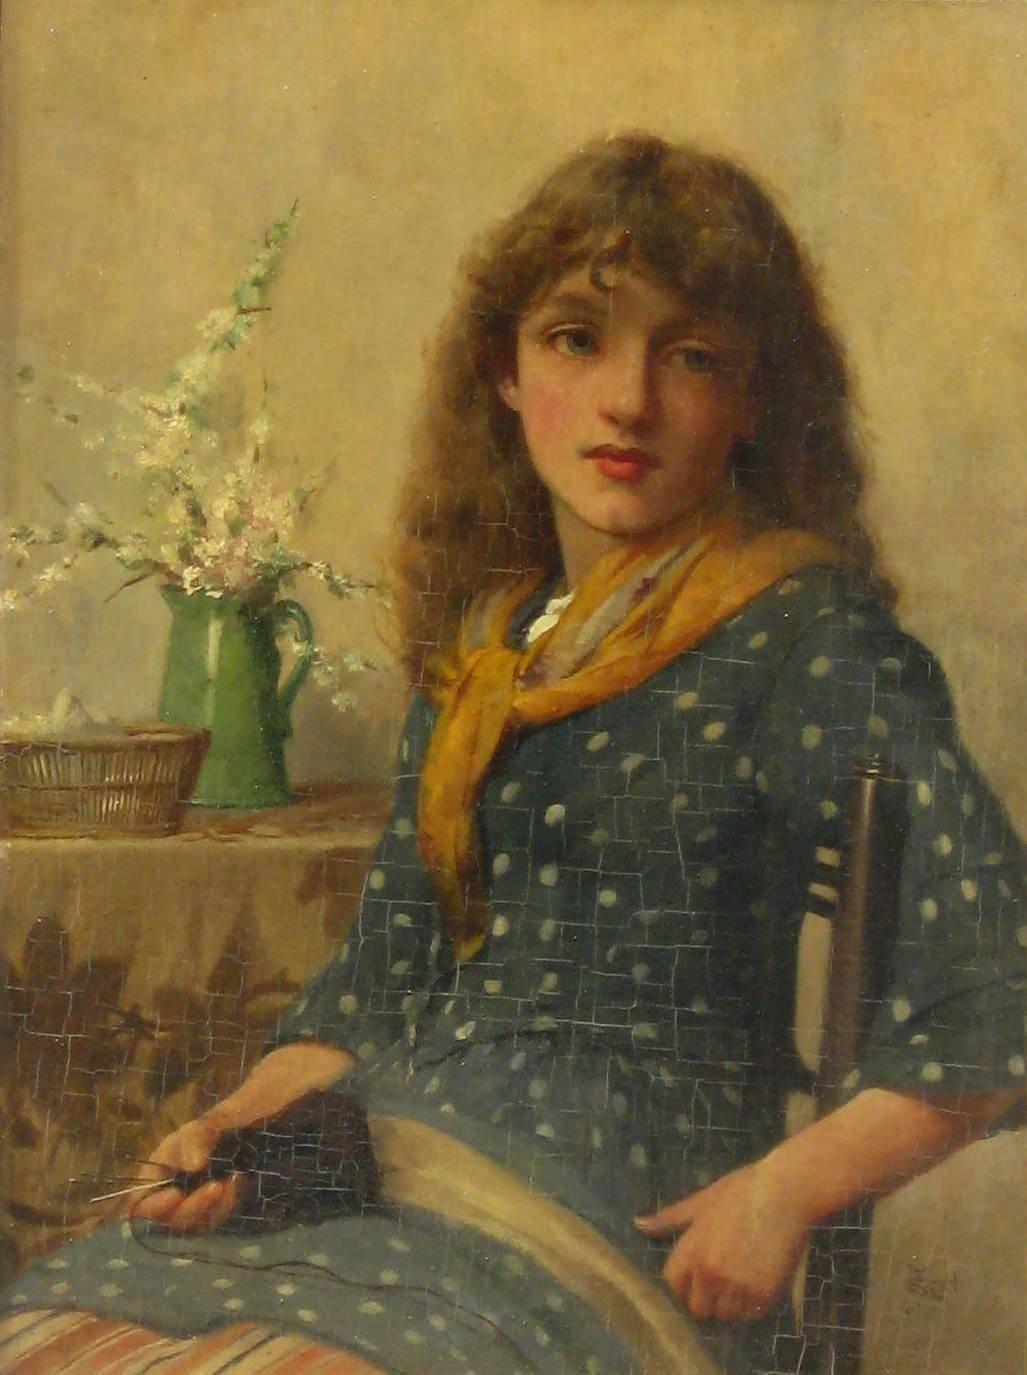 John Scott (1850-1918) Peintre britannique de figures et de genres. Huile sur carton en bon état, encadrée sous verre.
Mesures : 12 7/8